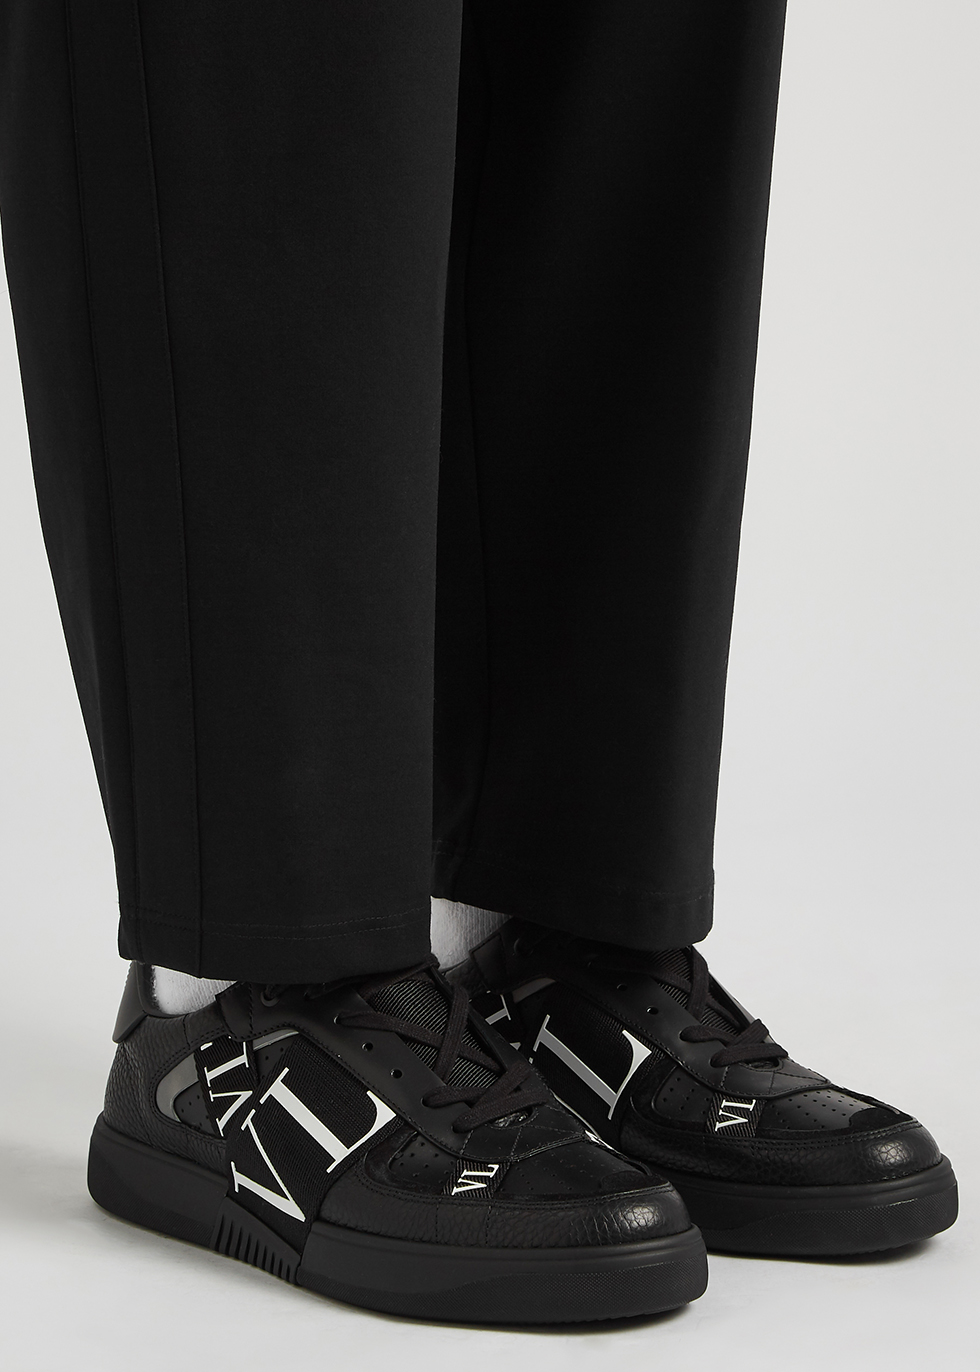 Valentino Valentino Garavani VL7N black leather sneakers - Harvey 